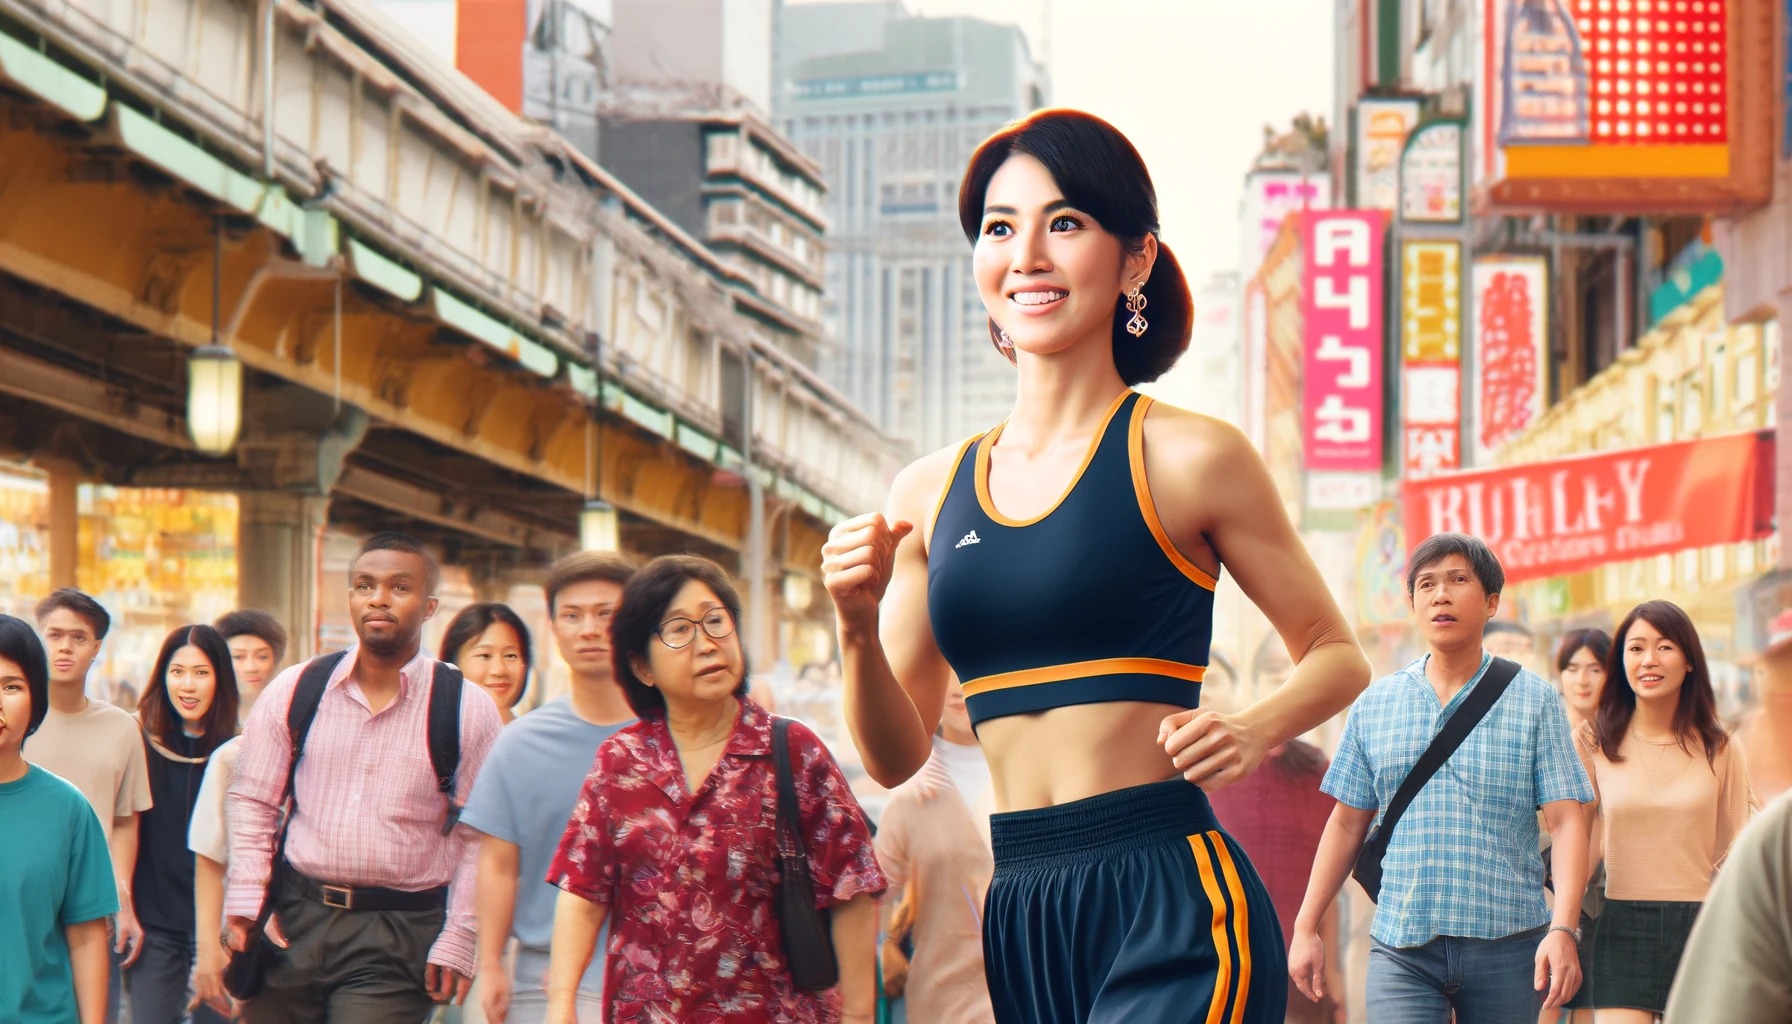 【画像】加護亜依さん(36)、体操服で街を闊歩して自慢の恵体を見せつけてしまう……